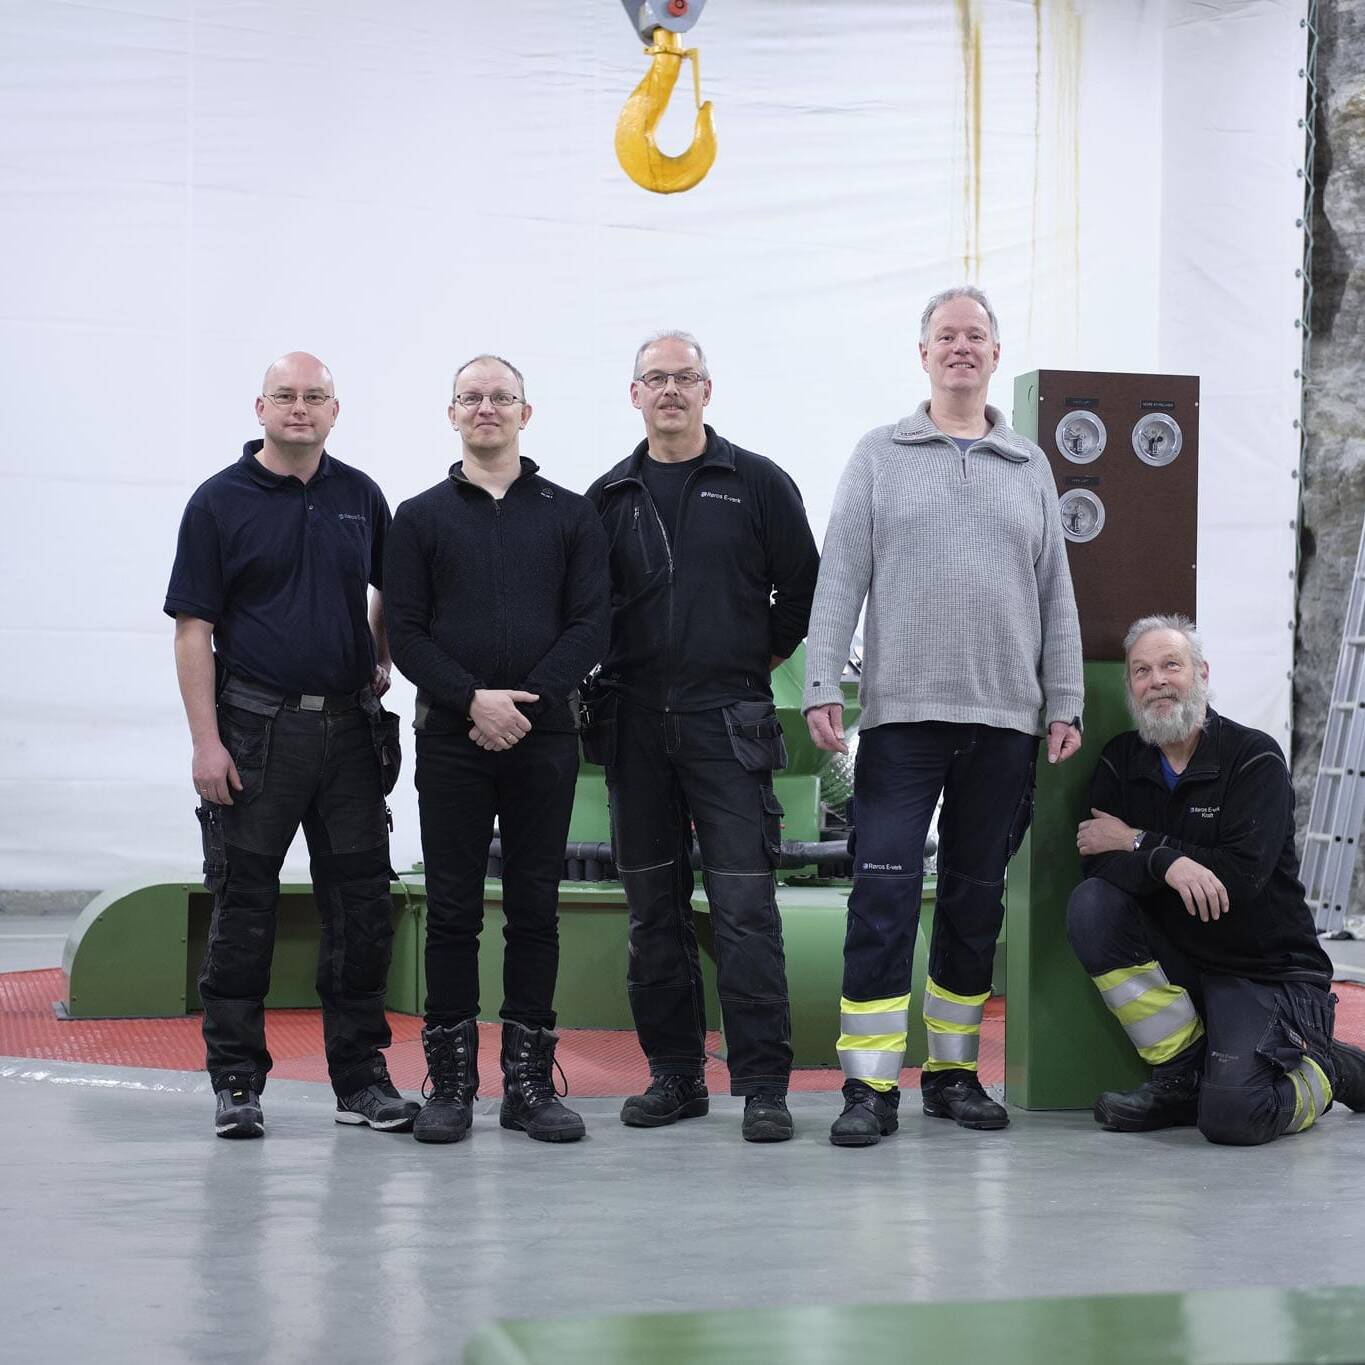 F.v.: Klaus Jensvold, Aage Løkken, Vidar Moholt, Olav Vehusheia og Jon Bjørnar Engan. Foto: Tom Gustavsen